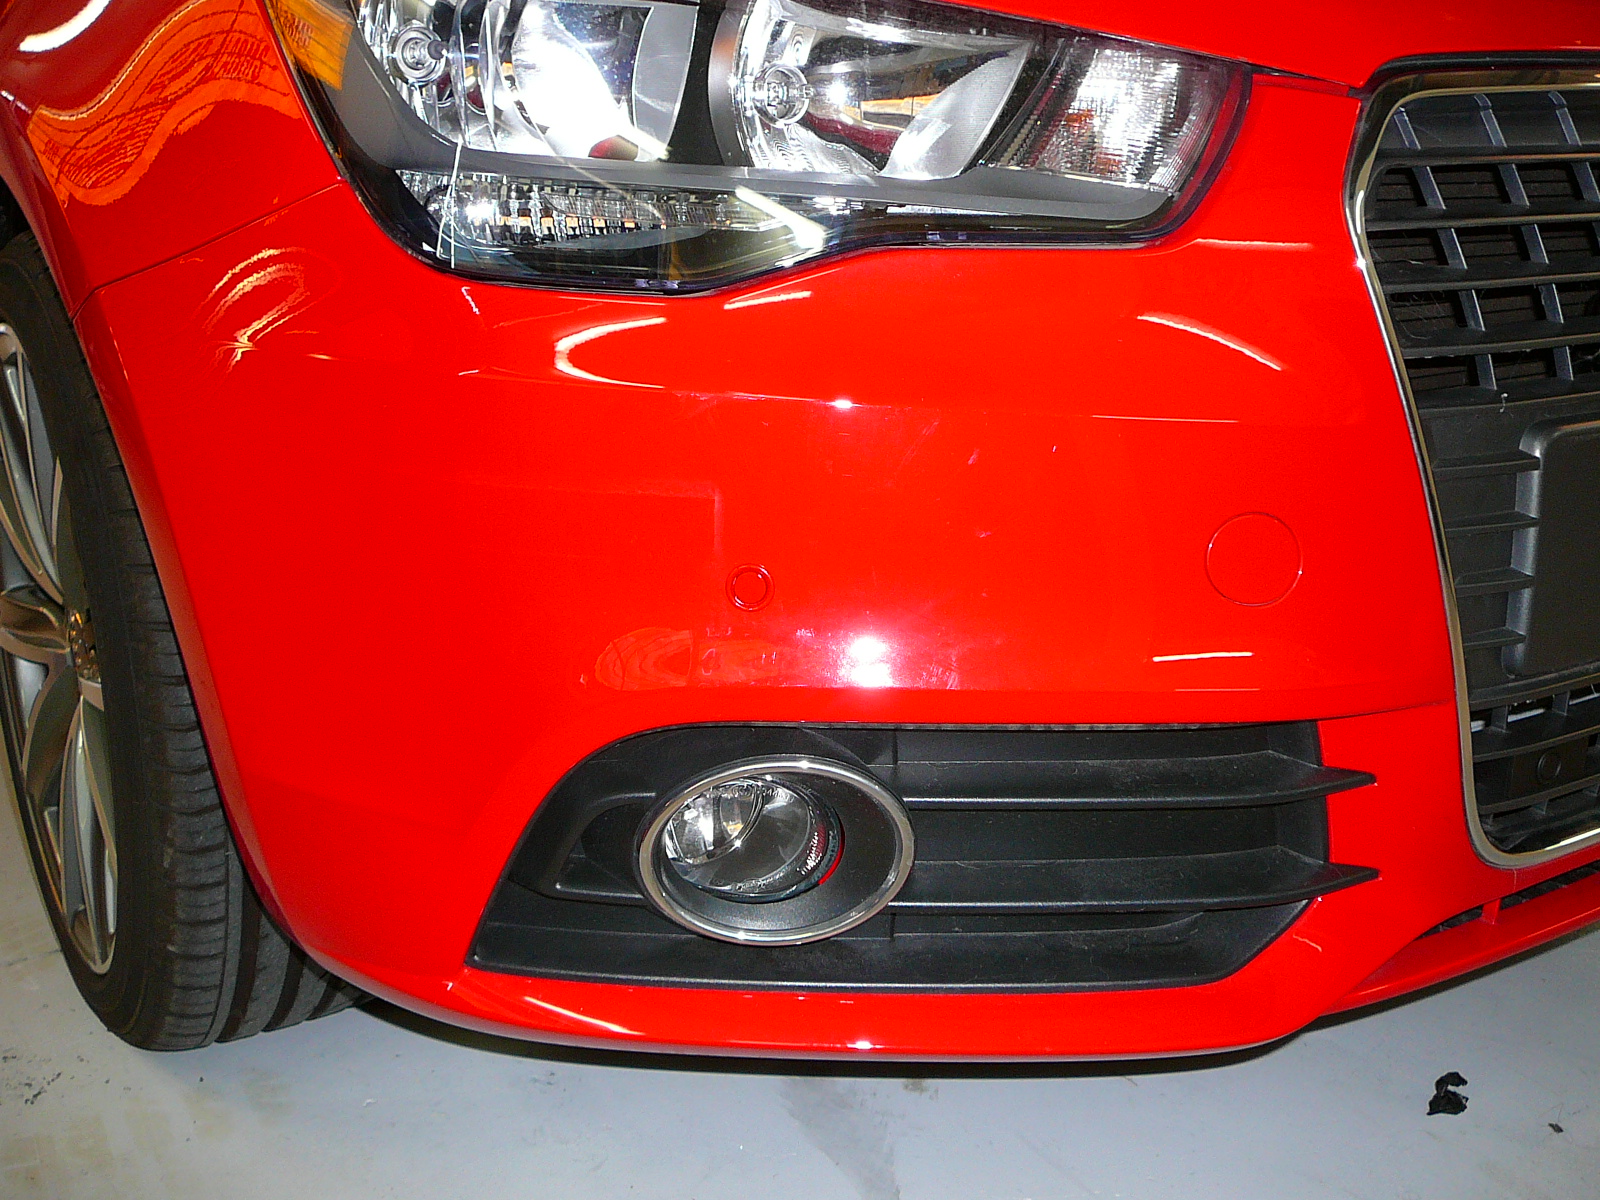 Audi A1 2011 Front Parking Sensors